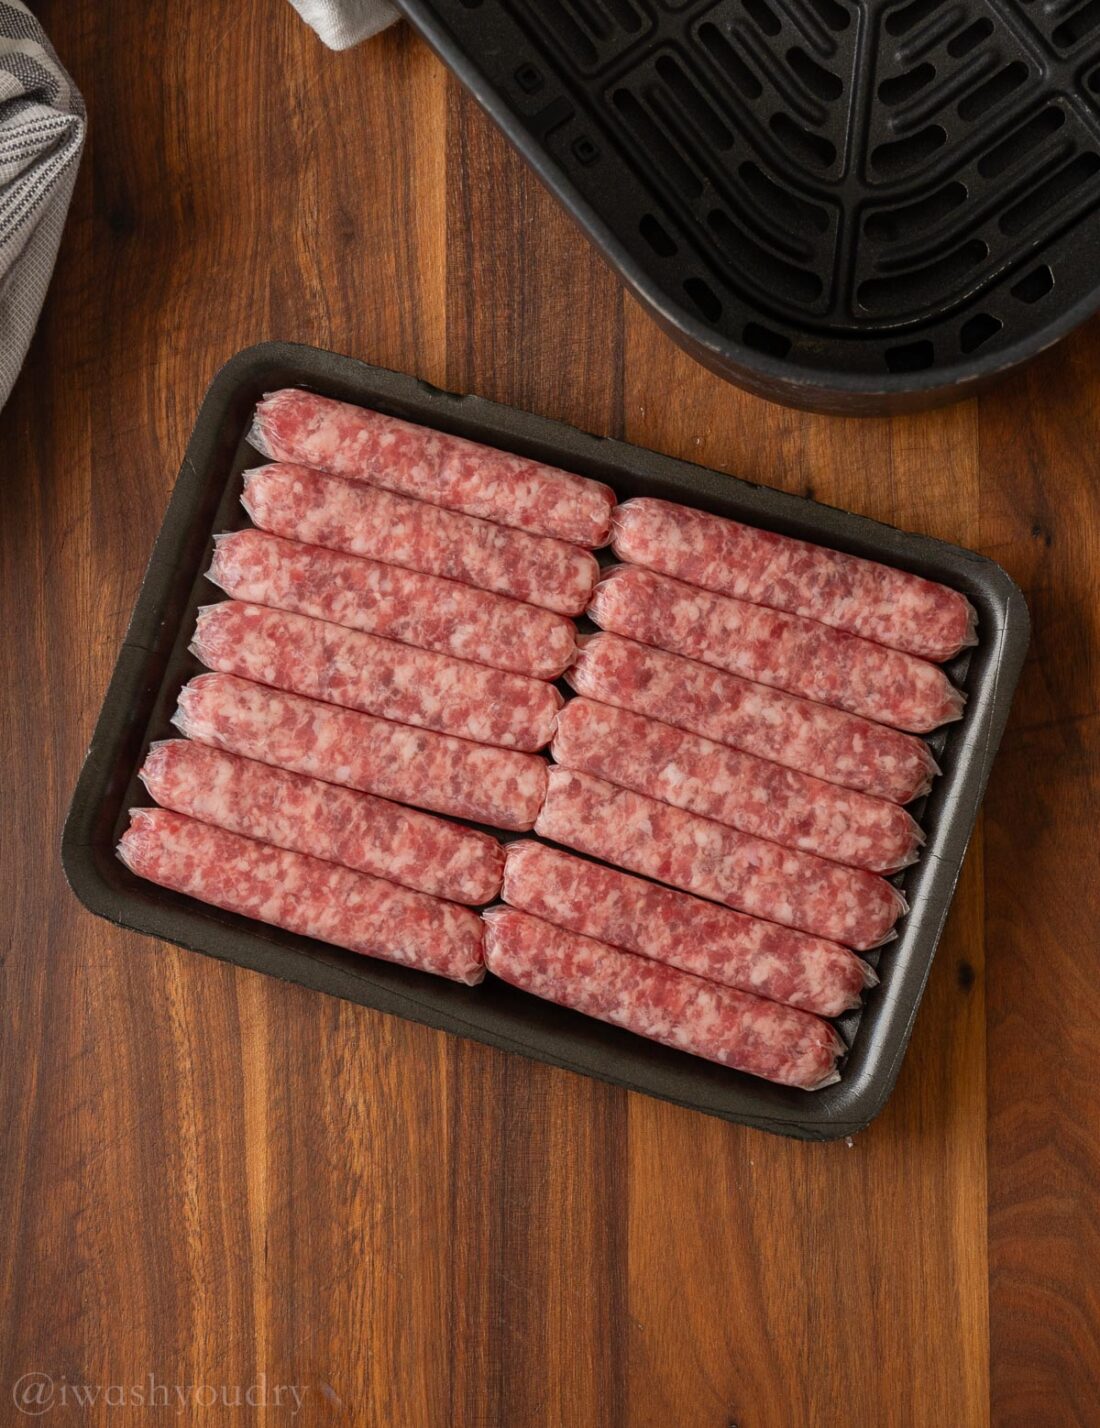 Raw pork sausage in black package. 